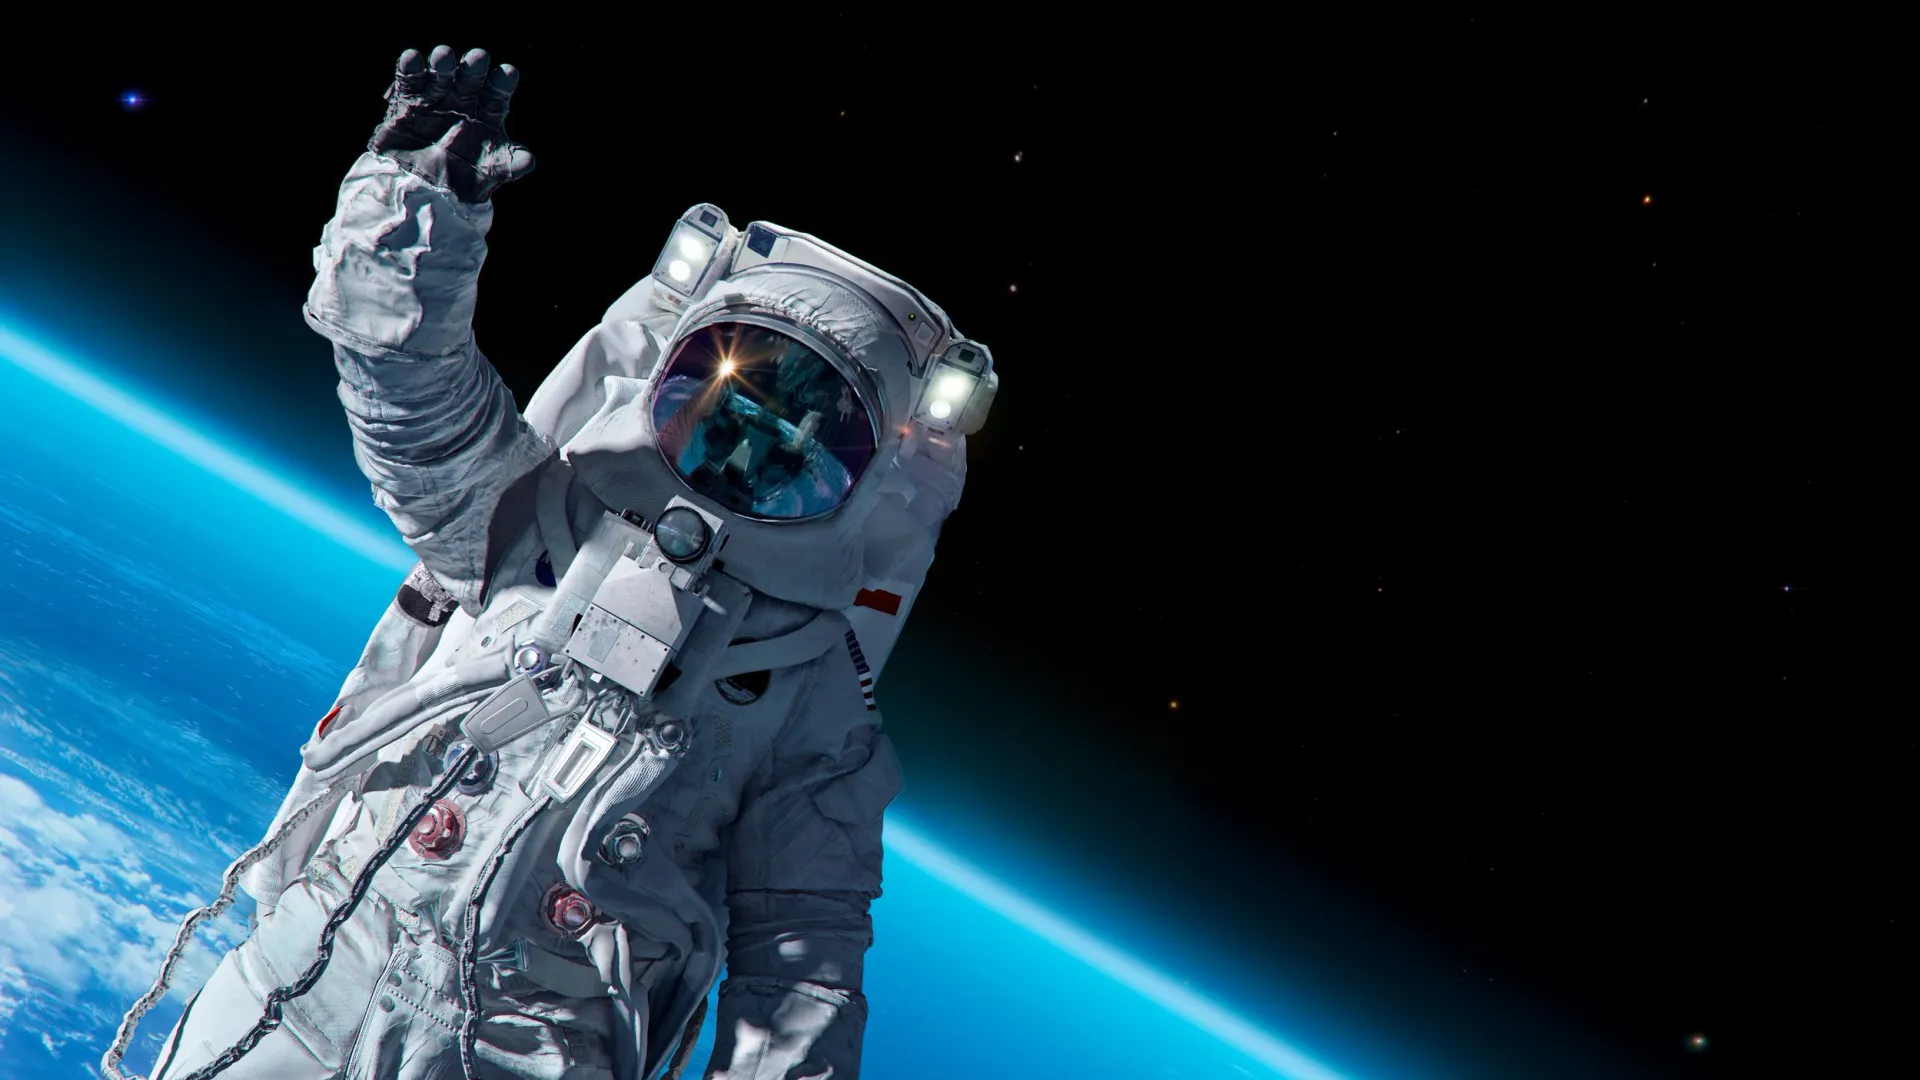 Космонавт пожелал россиянам ярких, как звездное небо, впечатлений. Фото: Corona Borealis Studio / Shutterstock / Fotodom